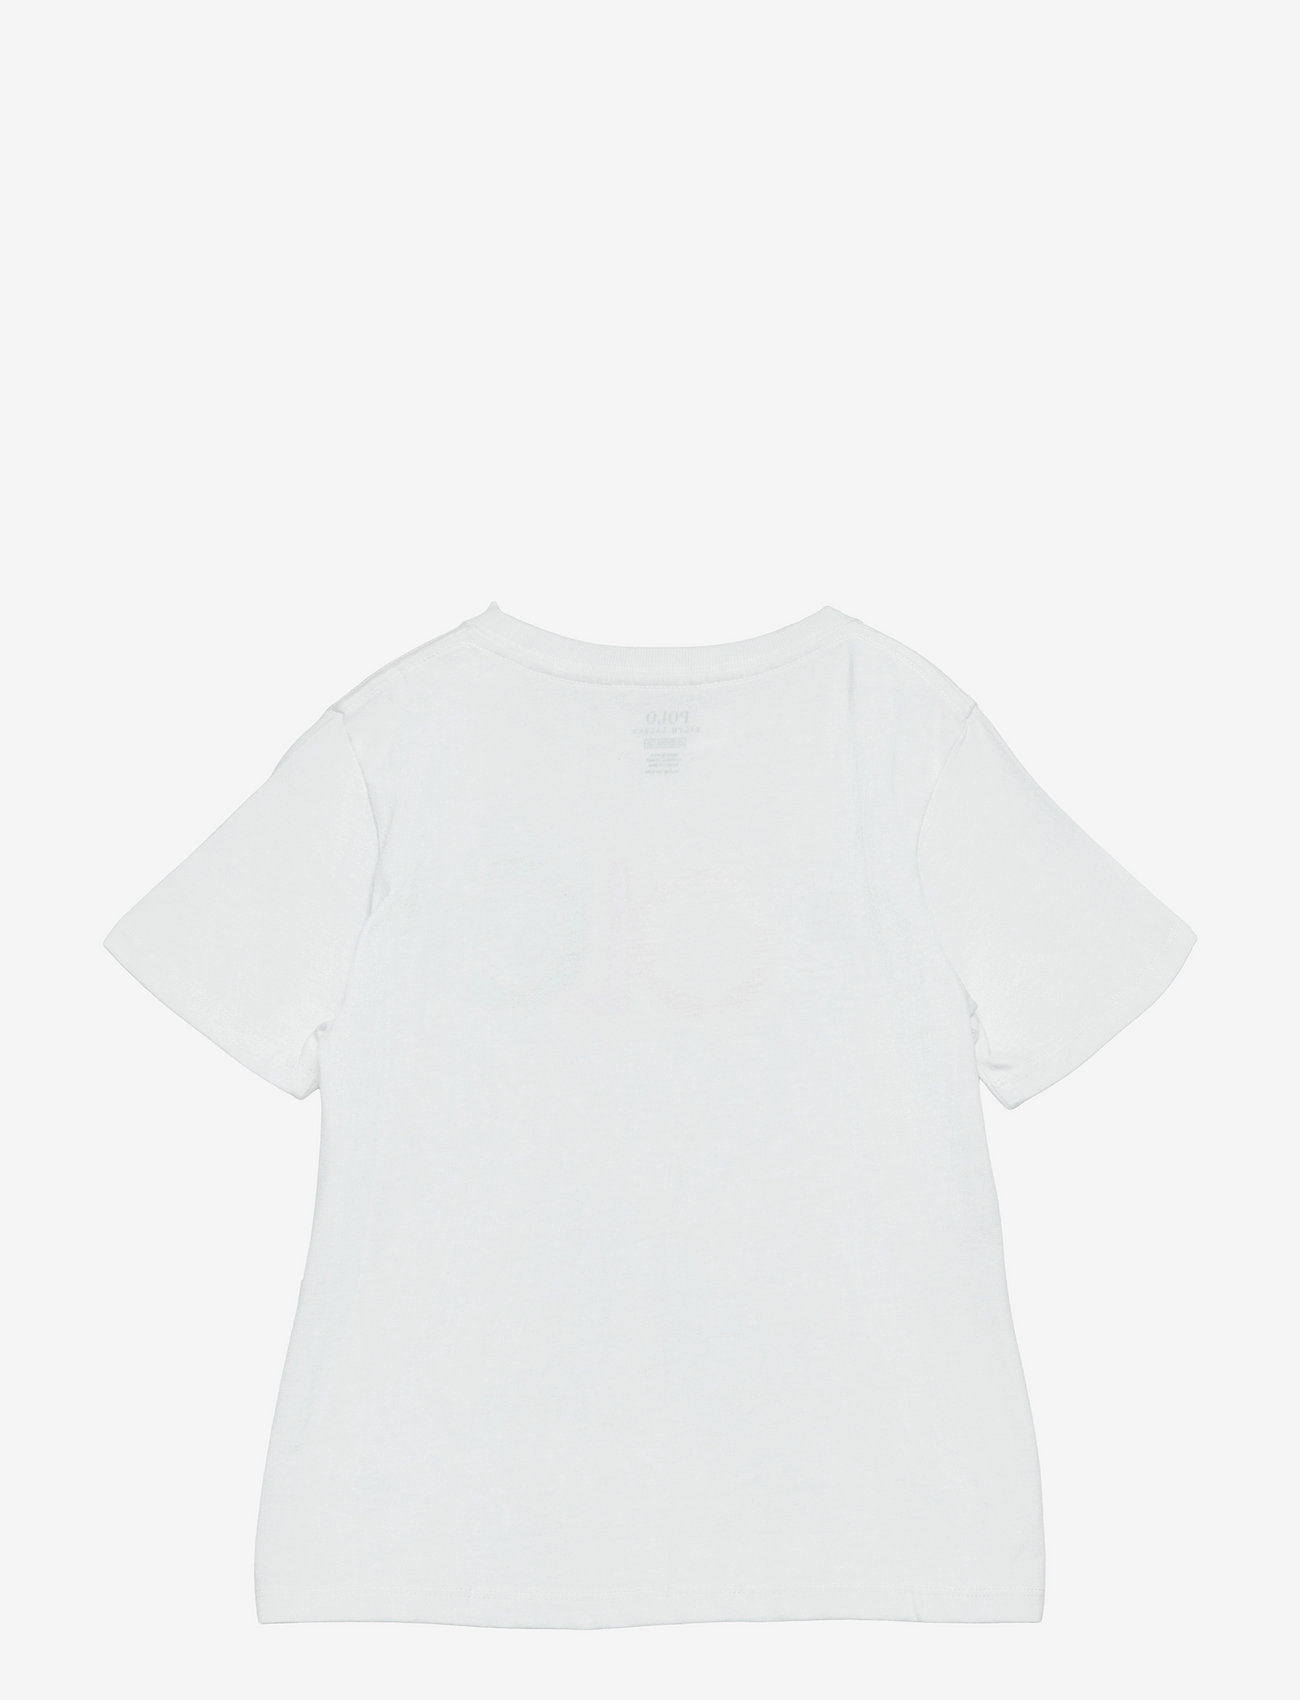 Ralph Lauren Kids - Logo Cotton Jersey Tee - pattern short-sleeved t-shirt - white - 1